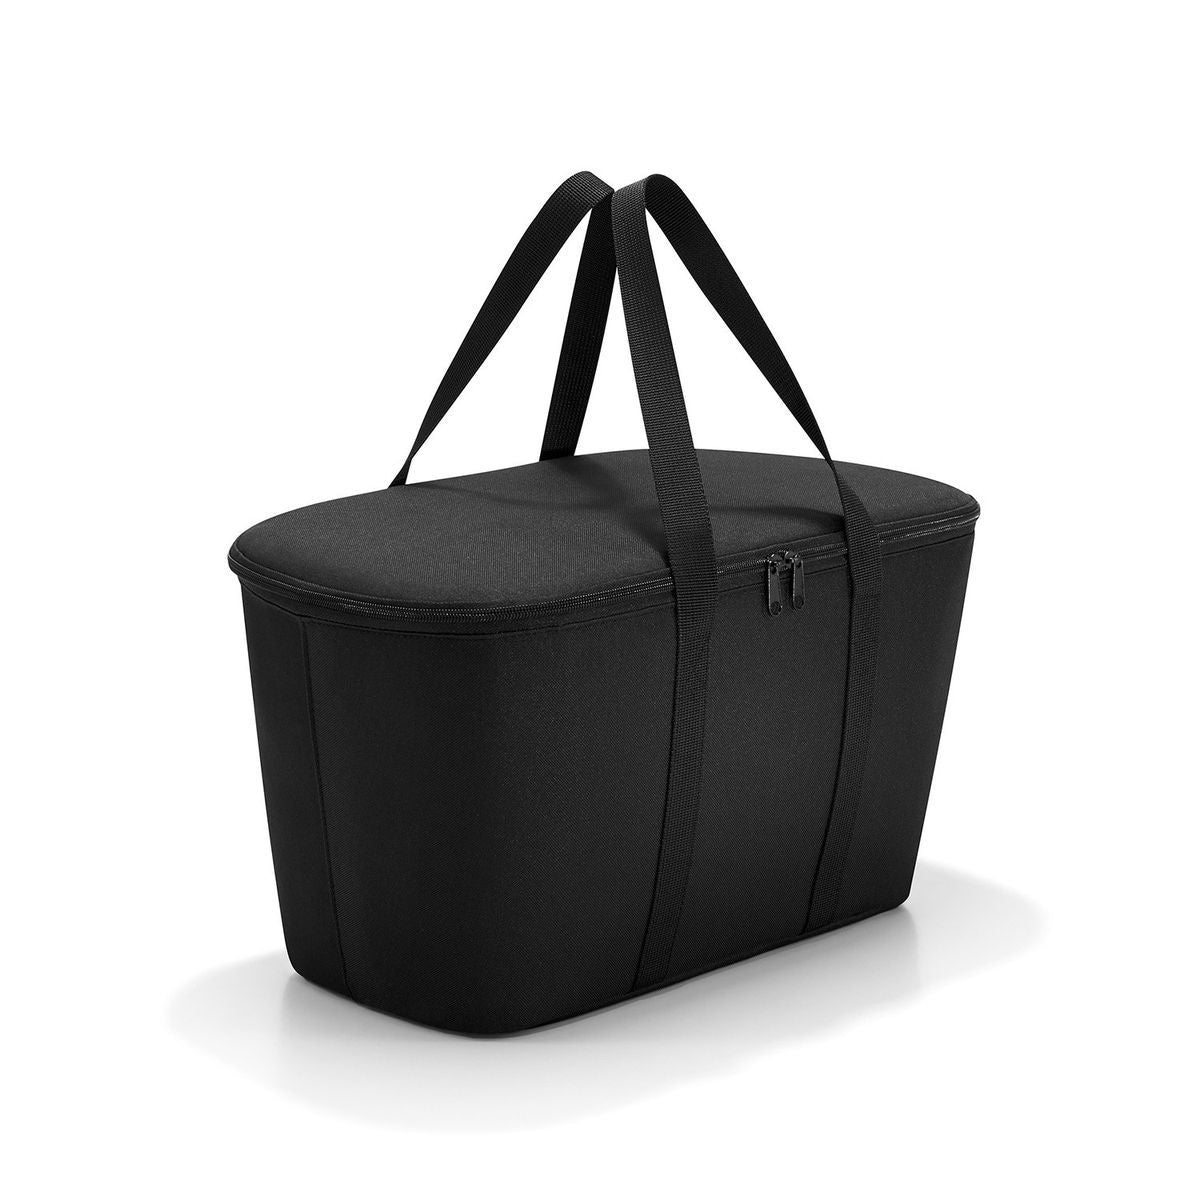 Reisenthel Coolerbag Black Kühltasche